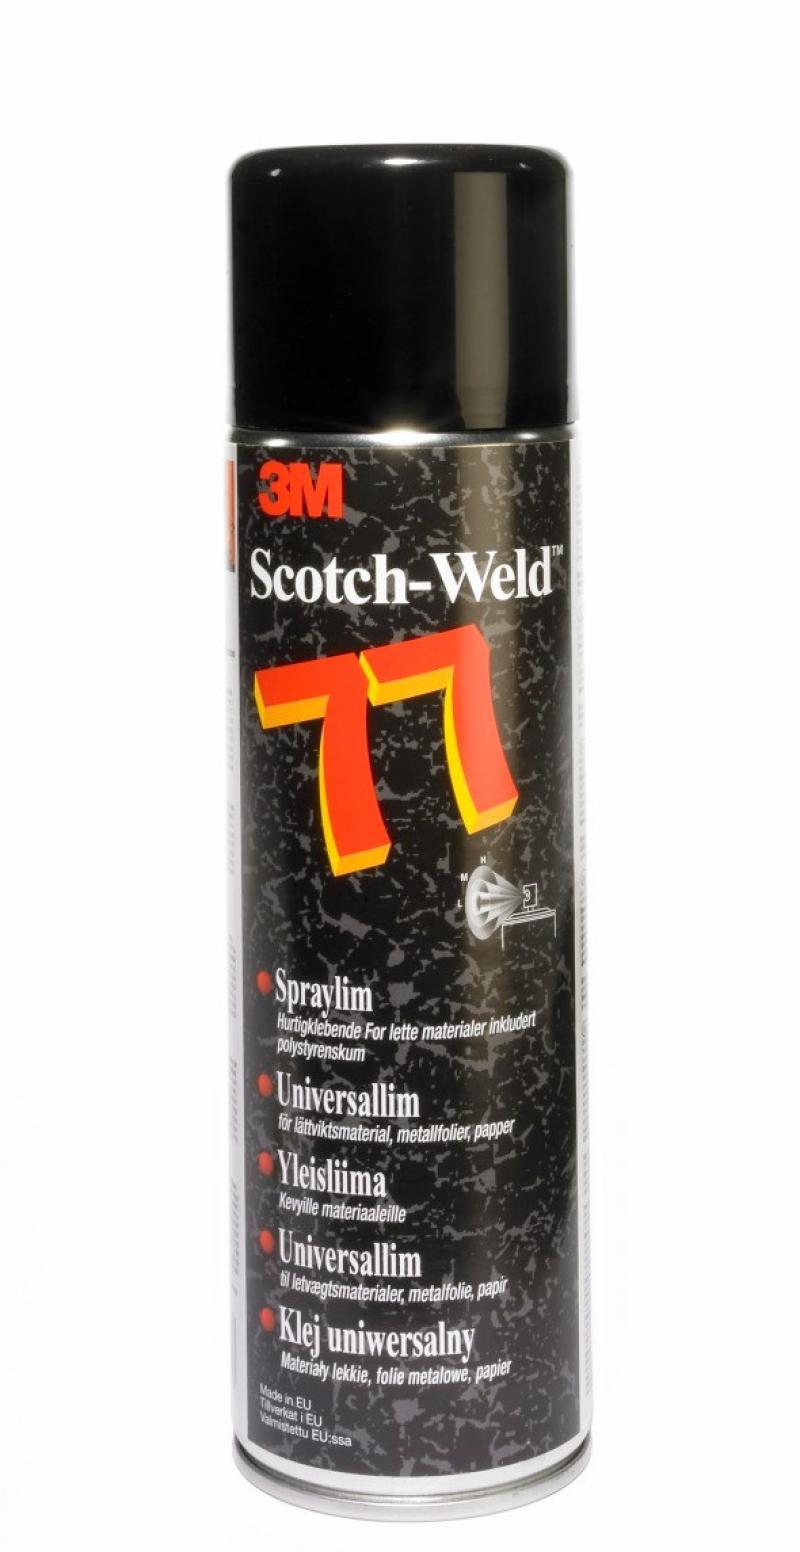 Spraylim Scotch Weld 77, 3M 7000116782